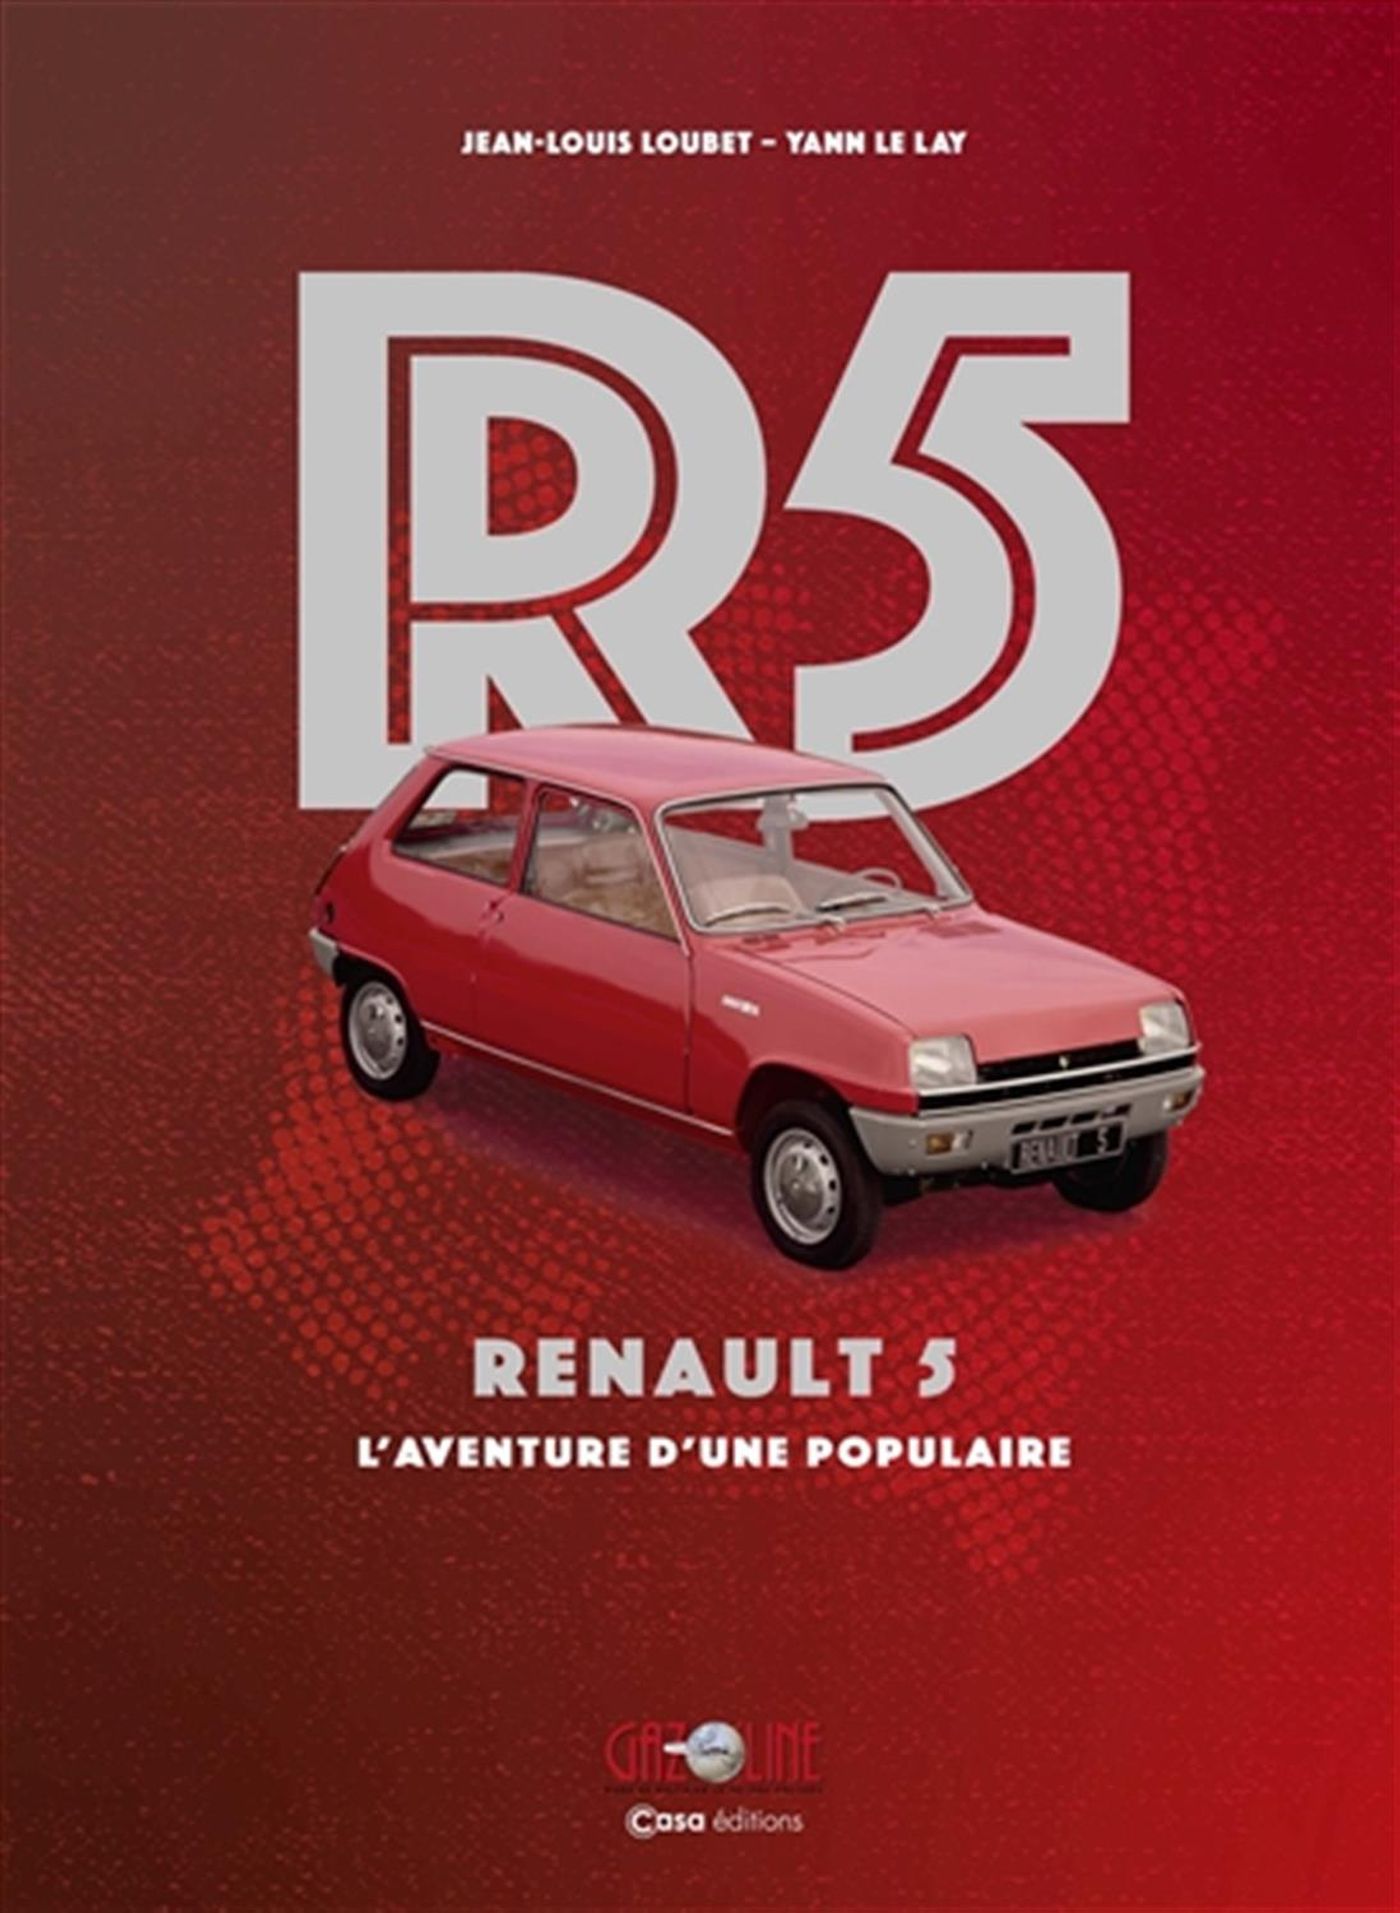 R5 - RENAULT 5 L'AVENTURE D'UNE POPULAIRE